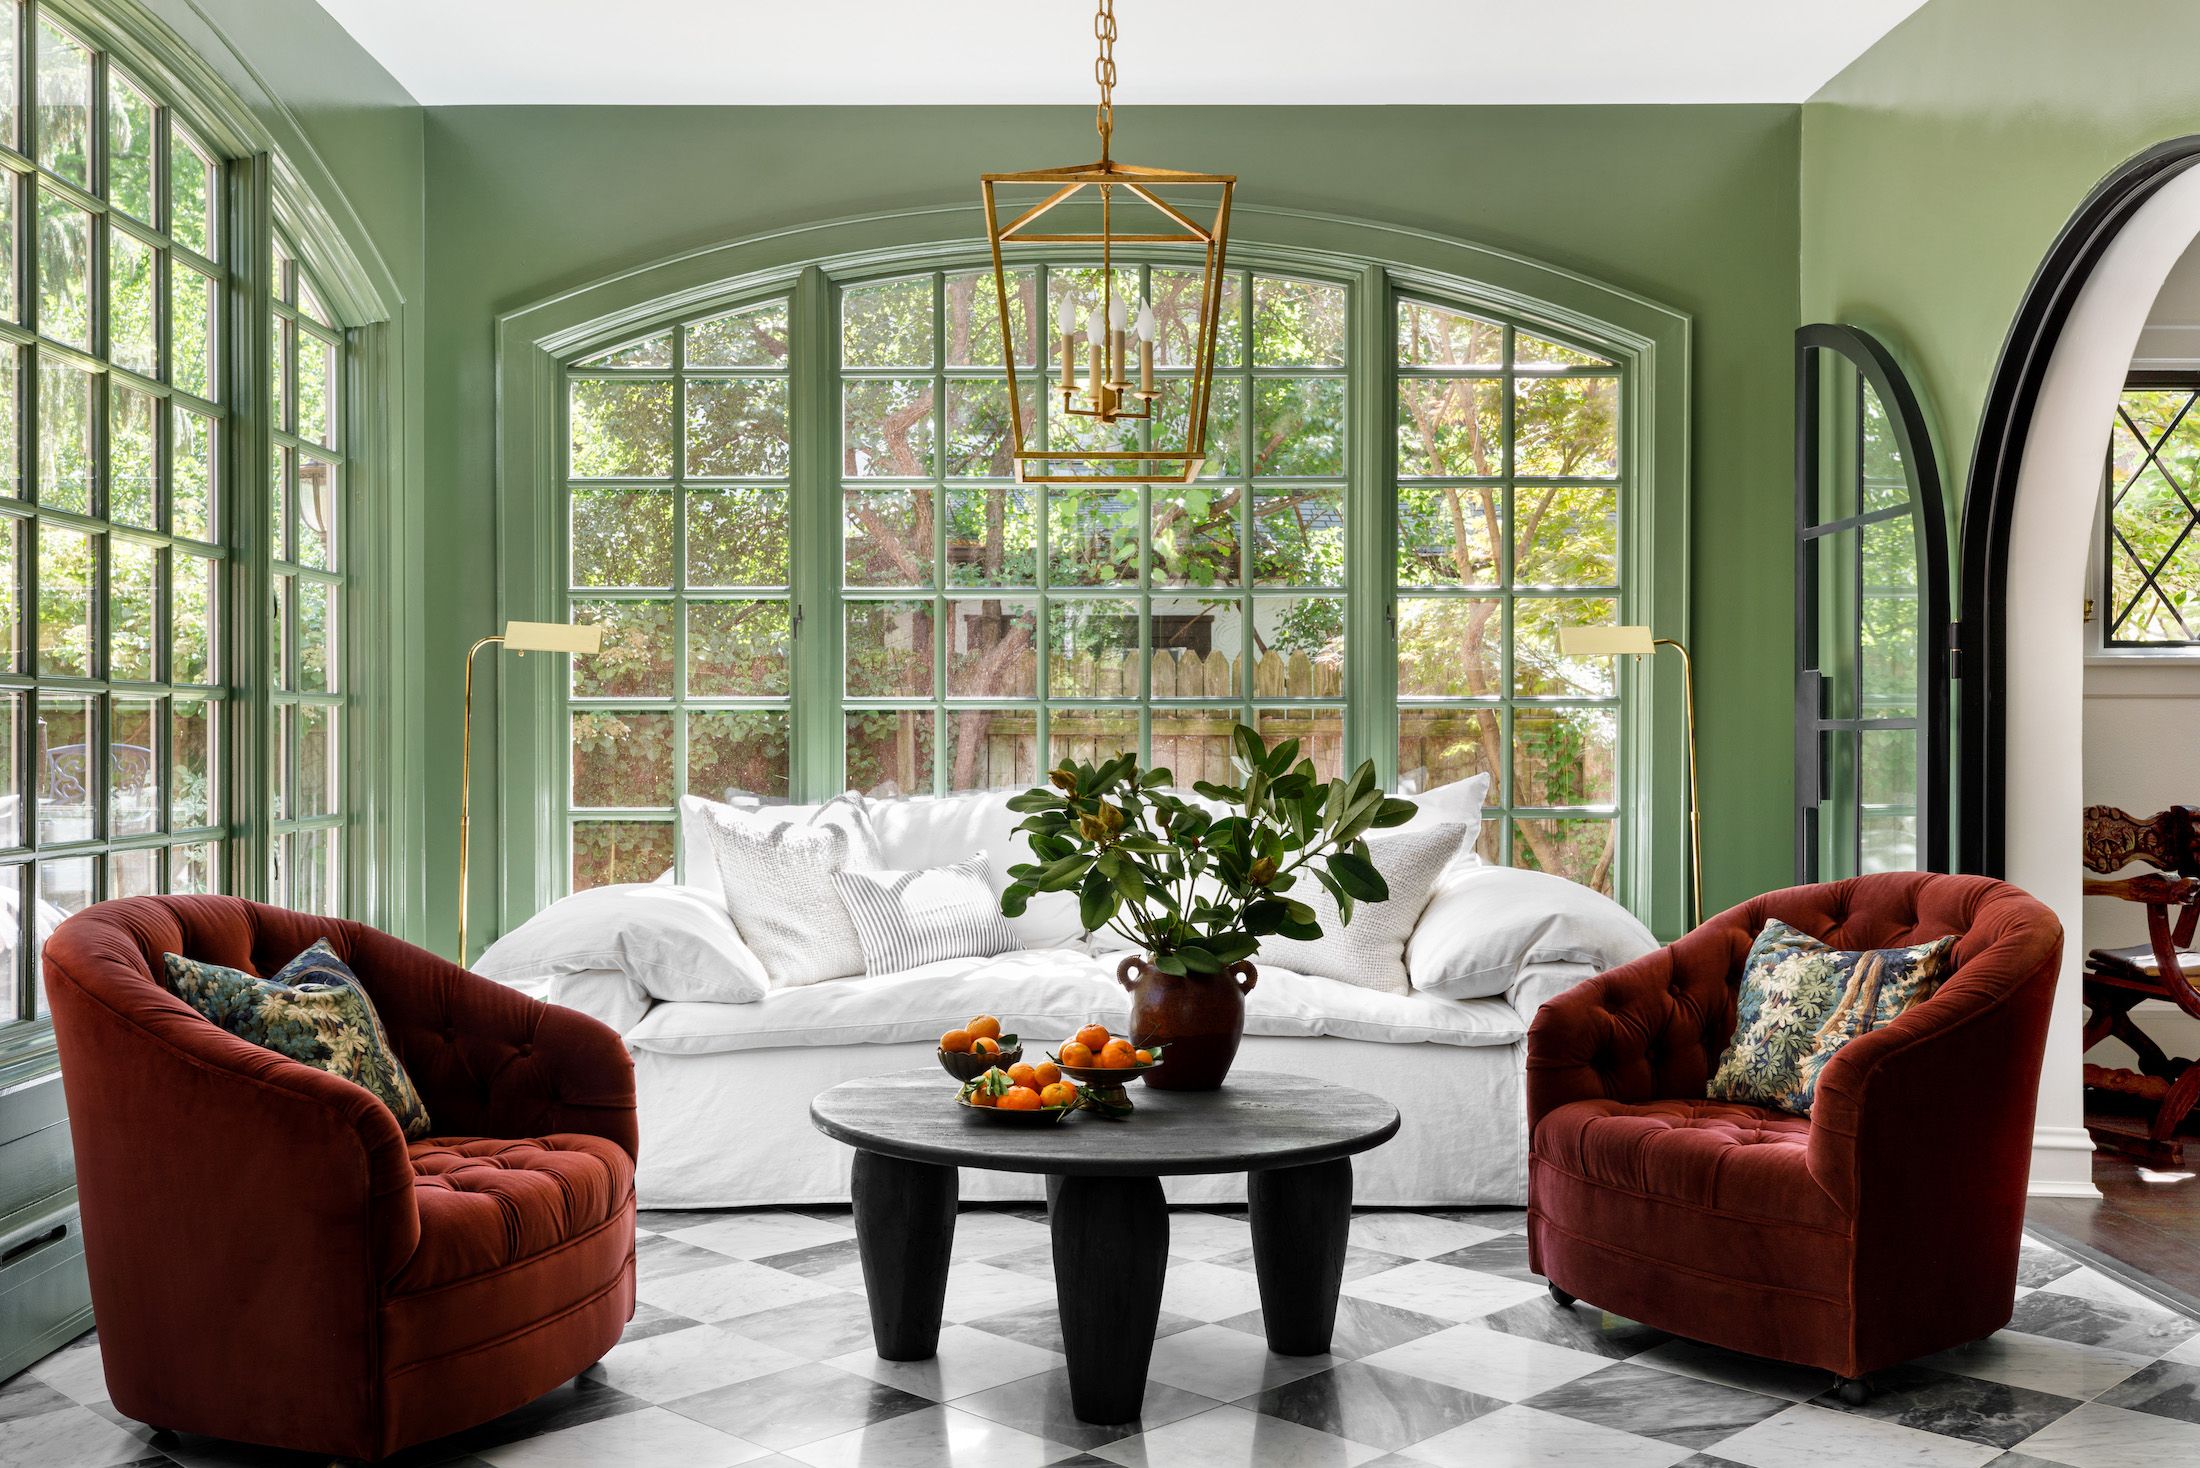 9 Best Contemporary Interior Design Ideas for Your Home | Foyr